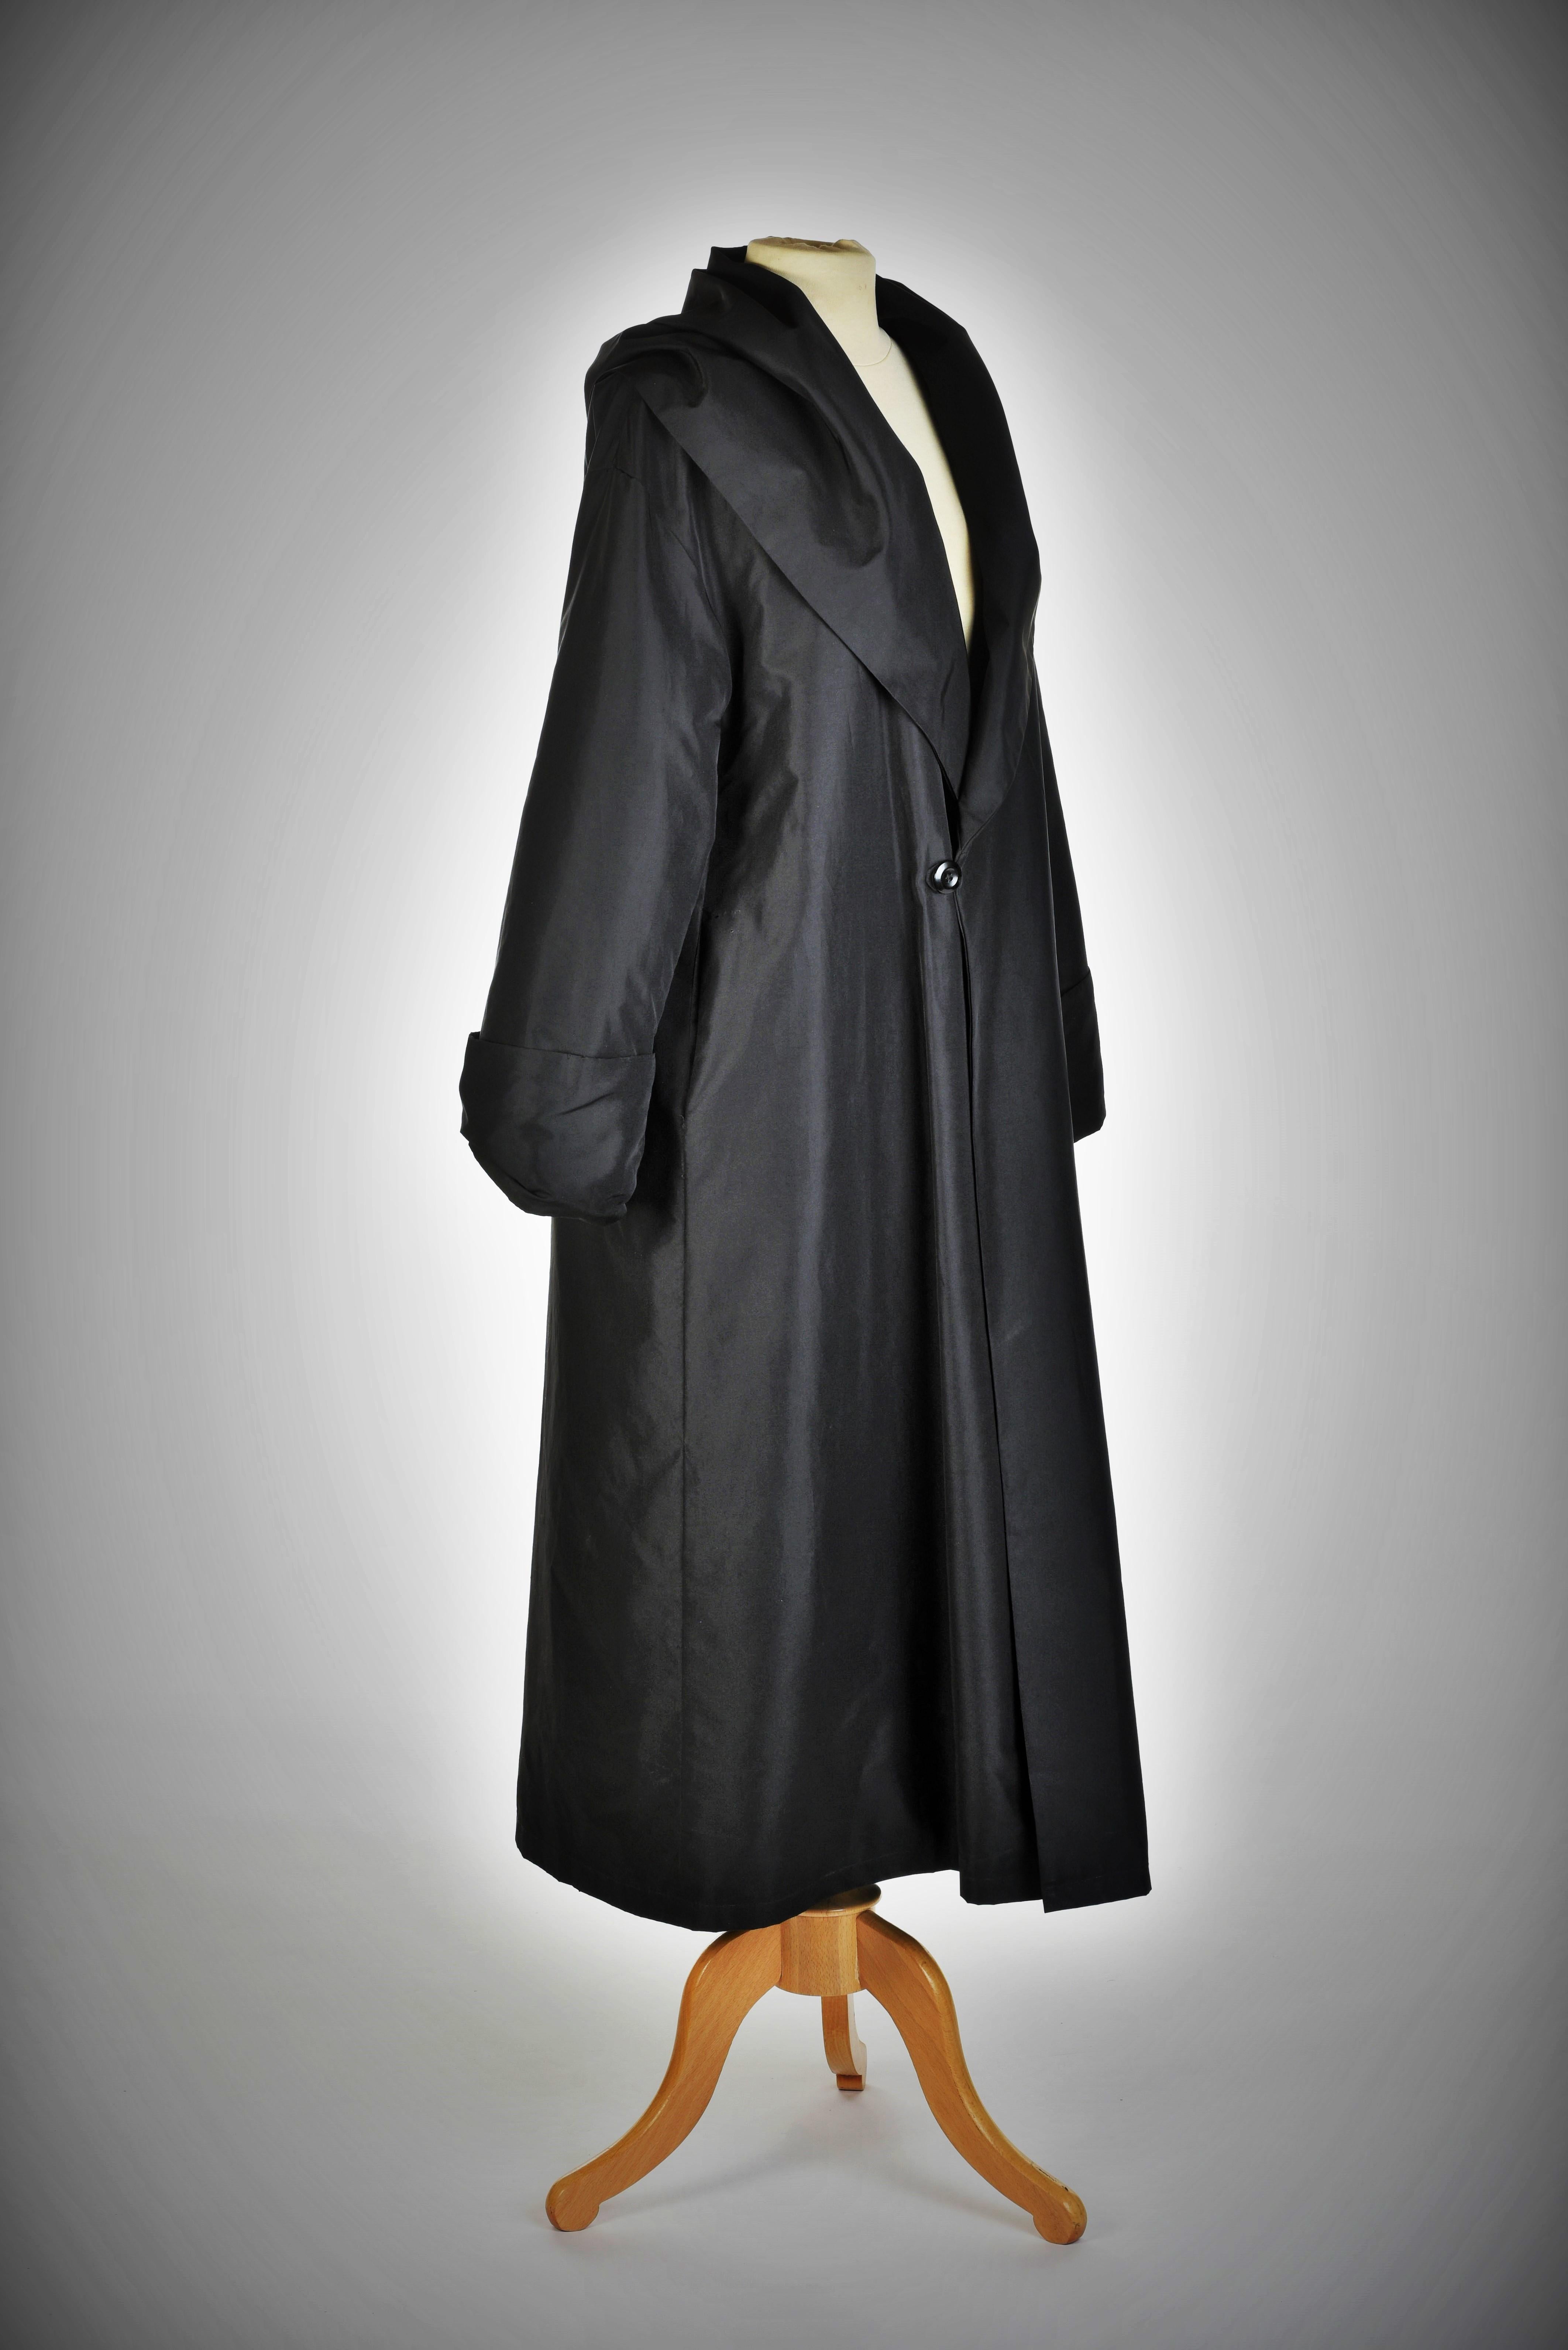 Vers 1955-1960

France

Manteau kimono de soirée en taffetas noir des années 1950. La doublure et le Label ont été changés dans les années 1980, peut-être par la Maison Dior car la doublure et le Label sont d'origine. Coupe ample et évasée, manches